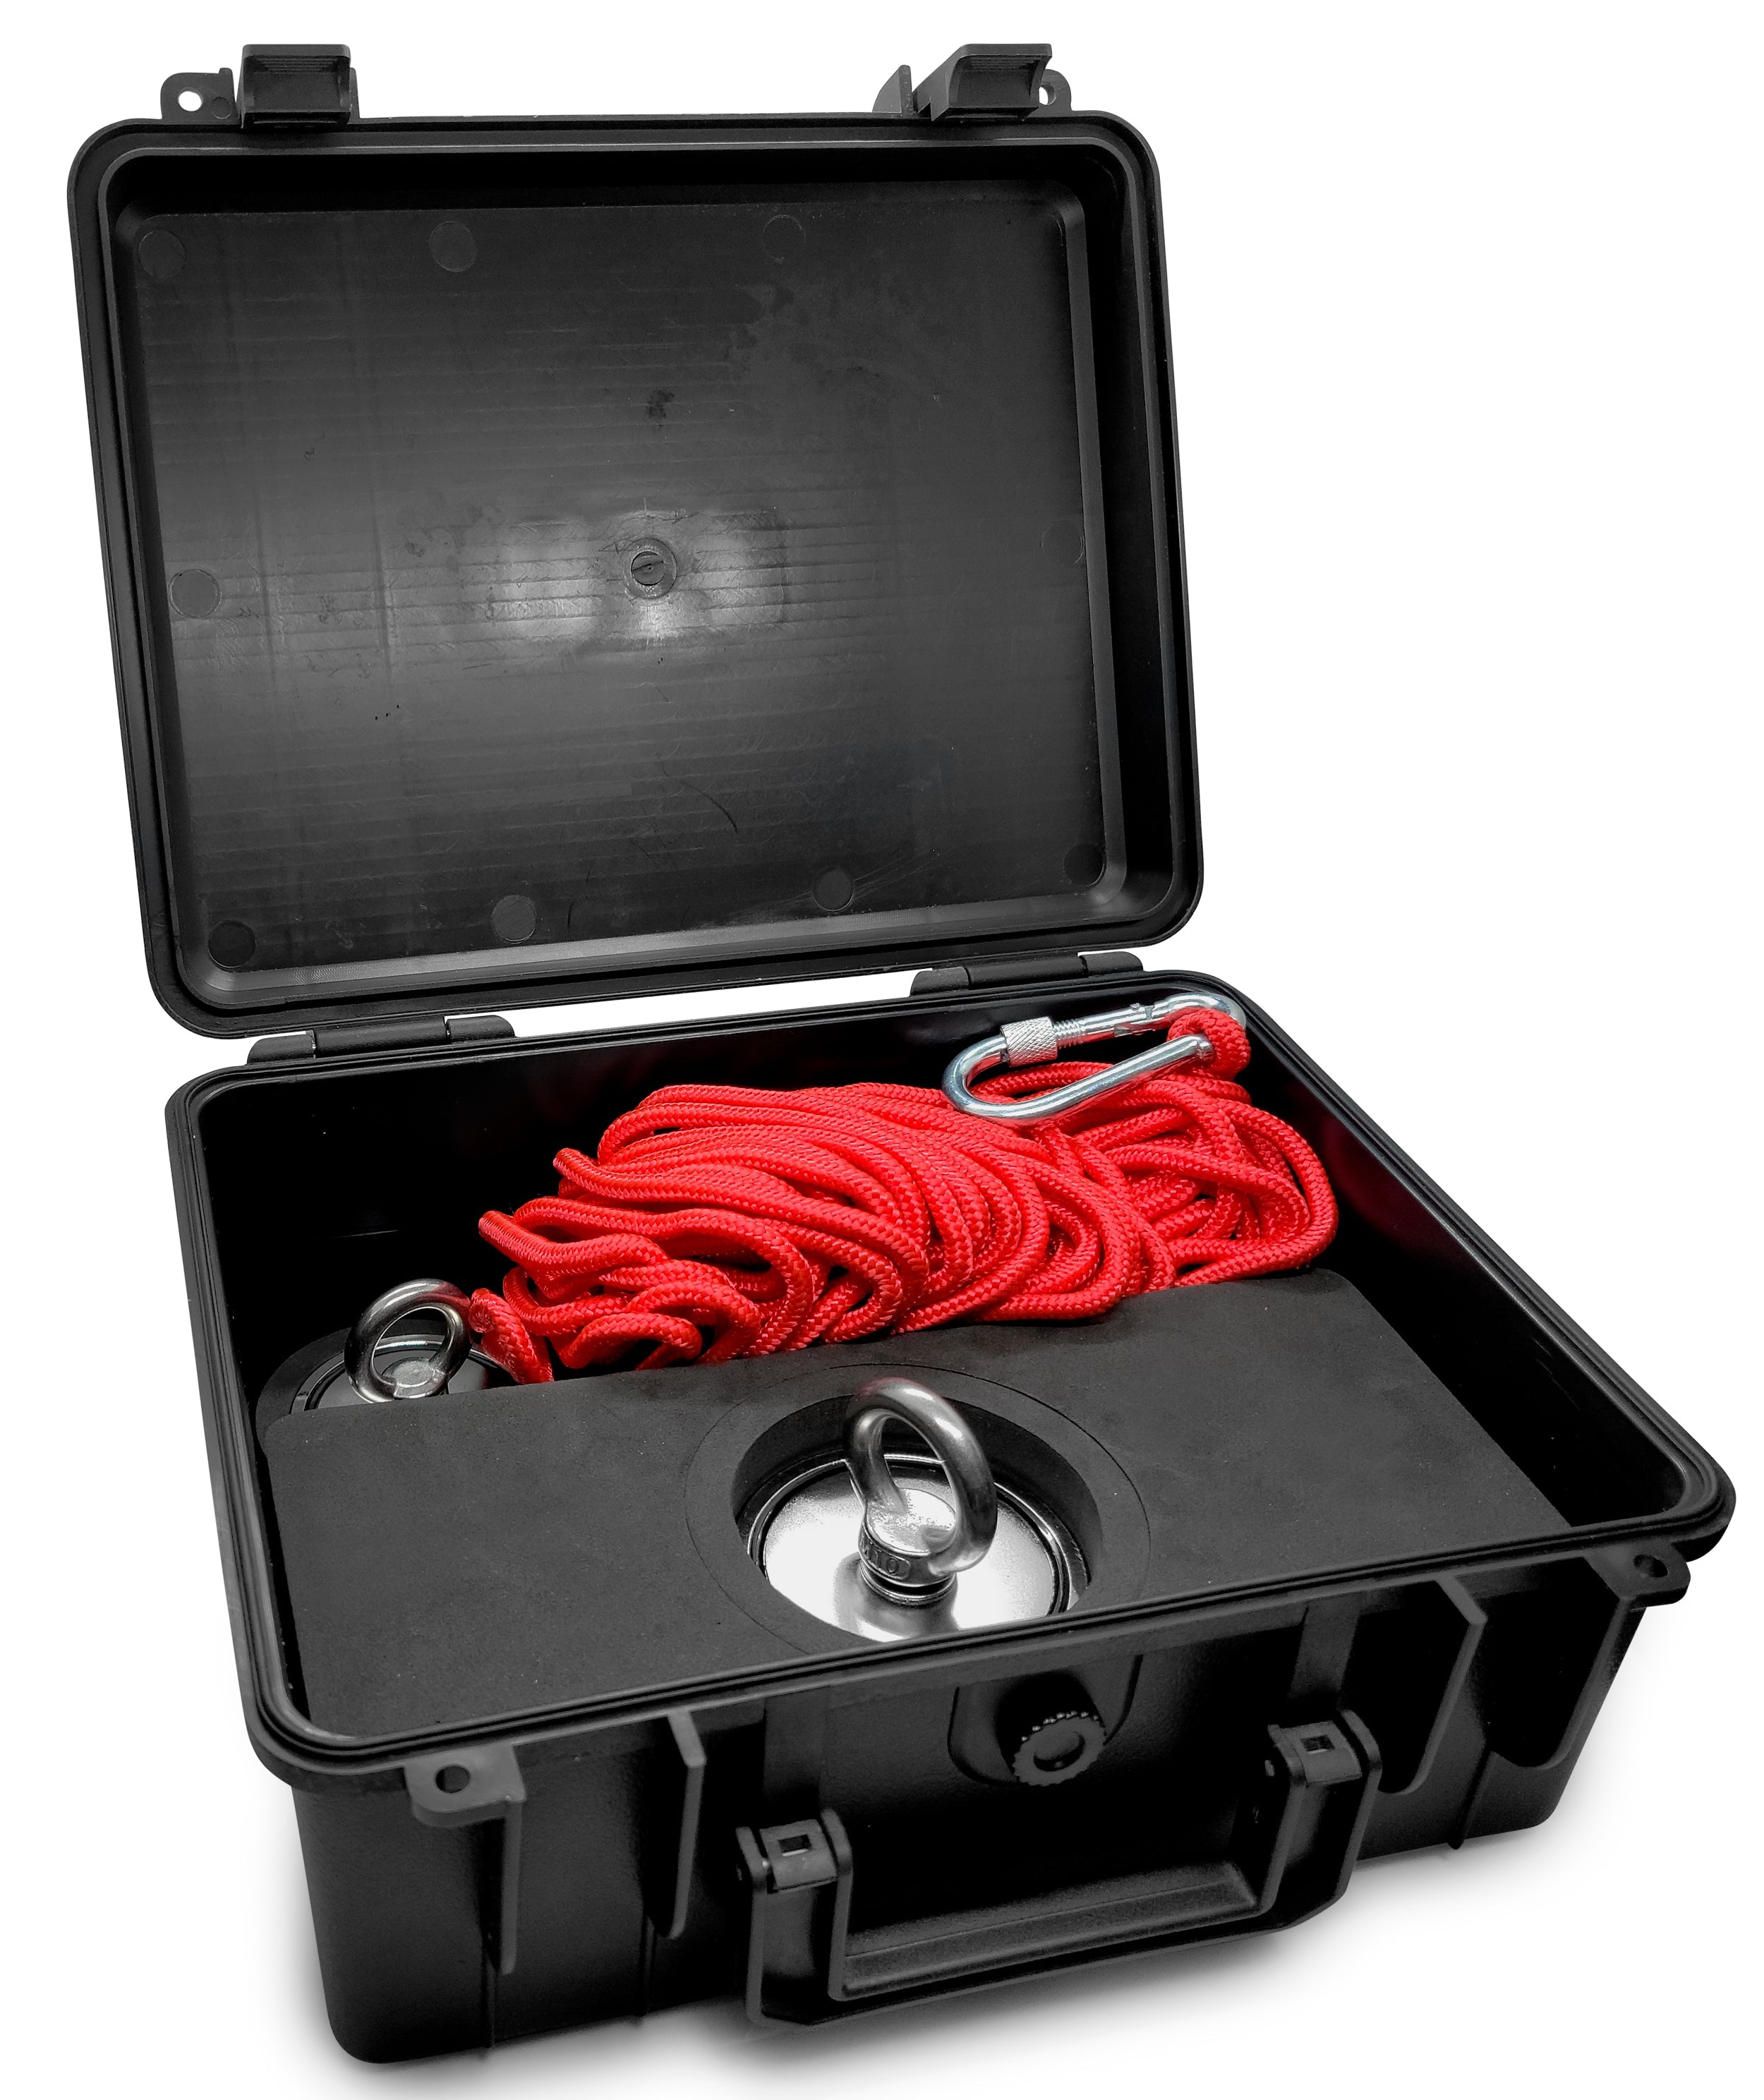 The swordfish (1000 lb) single thread fishing magnet kit – Simple